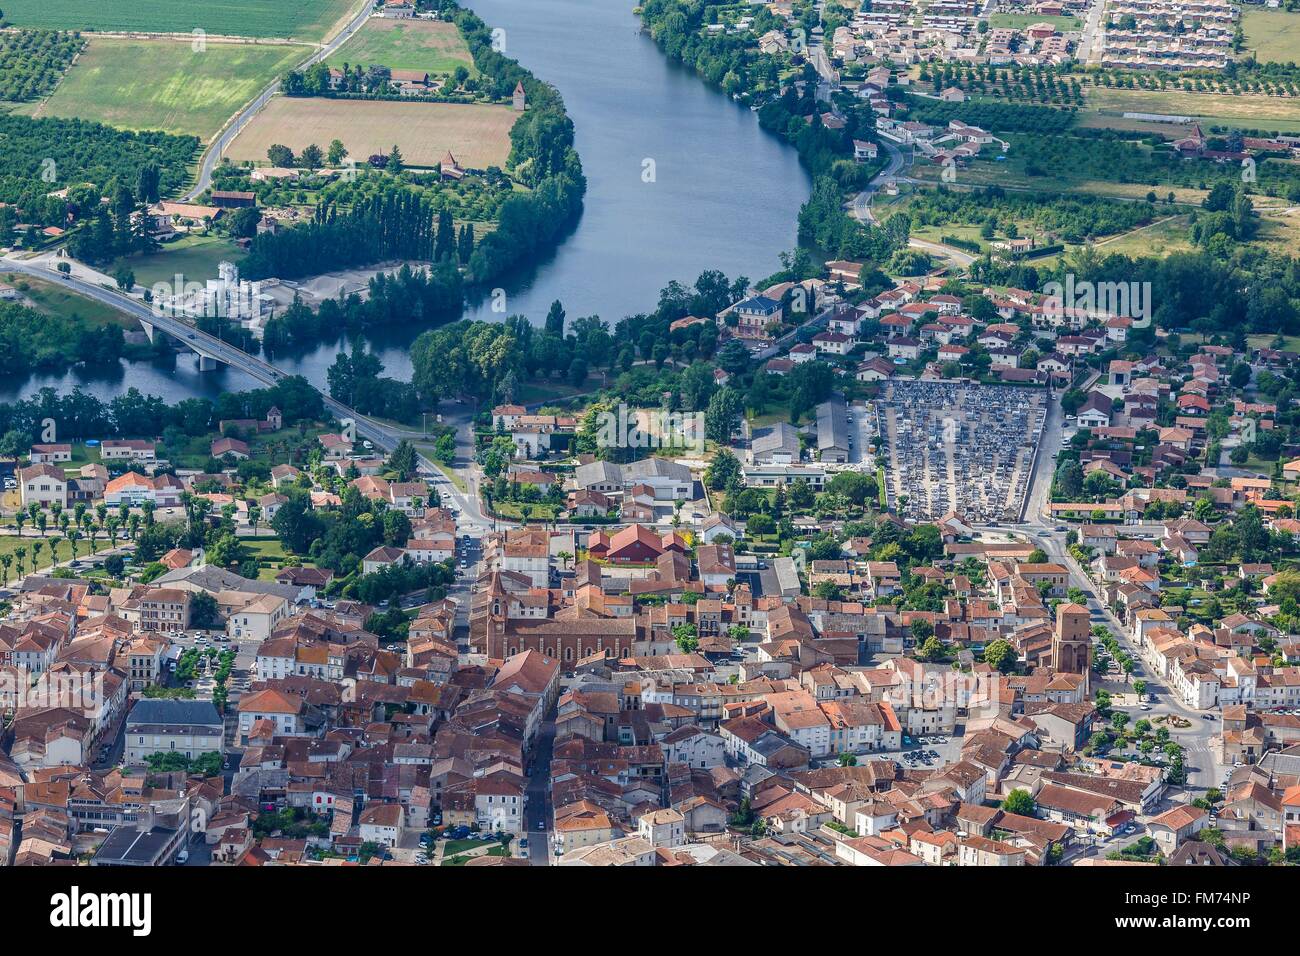 France, Lot et Garonne, Sainte Livrade sur Lot, the town on the Lot river  (aerial view Stock Photo - Alamy